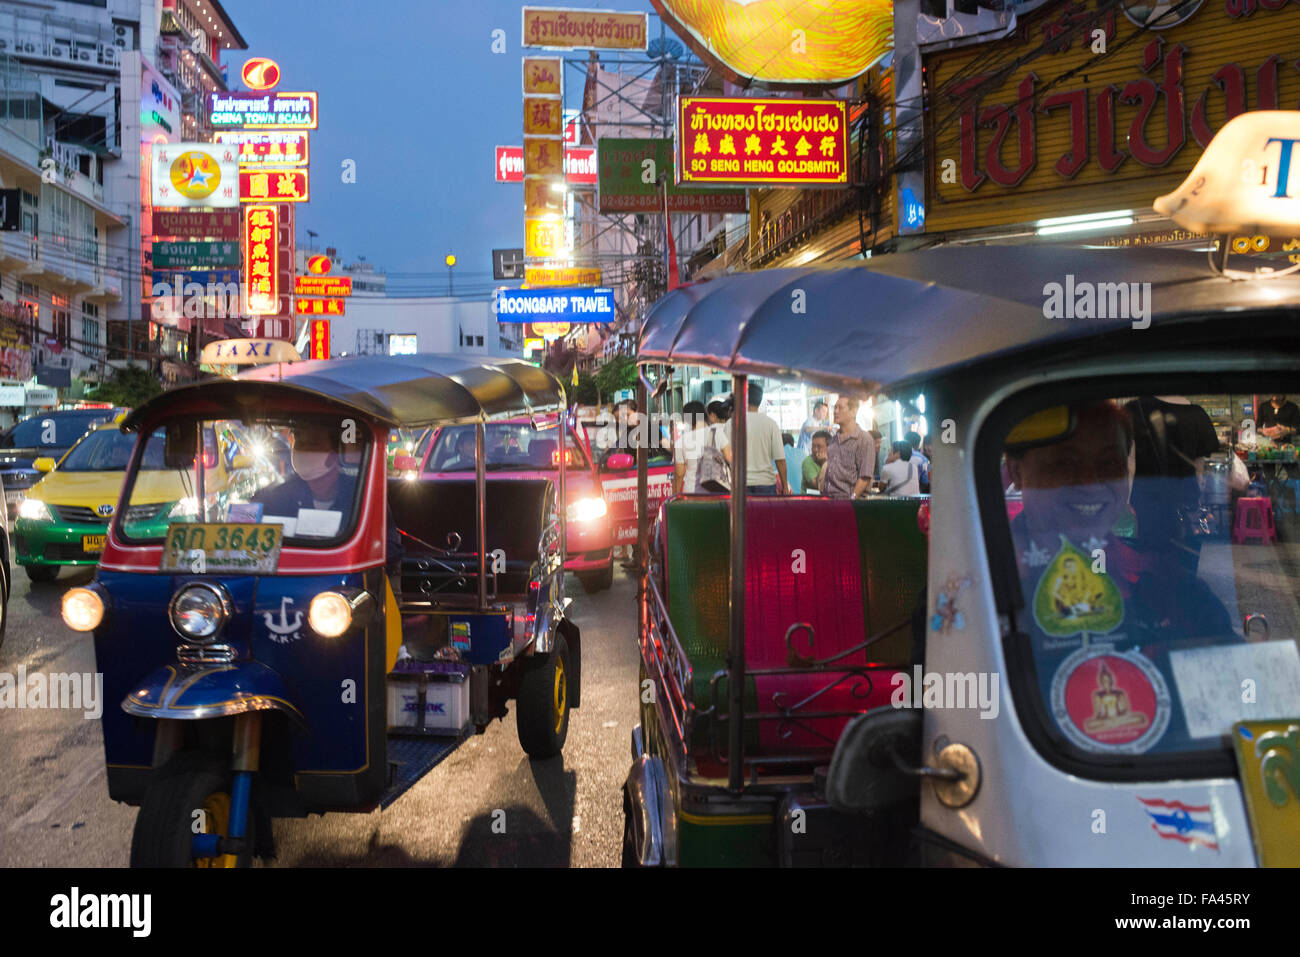 Tuk Tuks taxi dans la rue. Vue vers le bas Thanon Yaowarat Road dans la nuit dans le centre de Chinatown district de Bangkok en Thaïlande. Yaowarat Banque D'Images